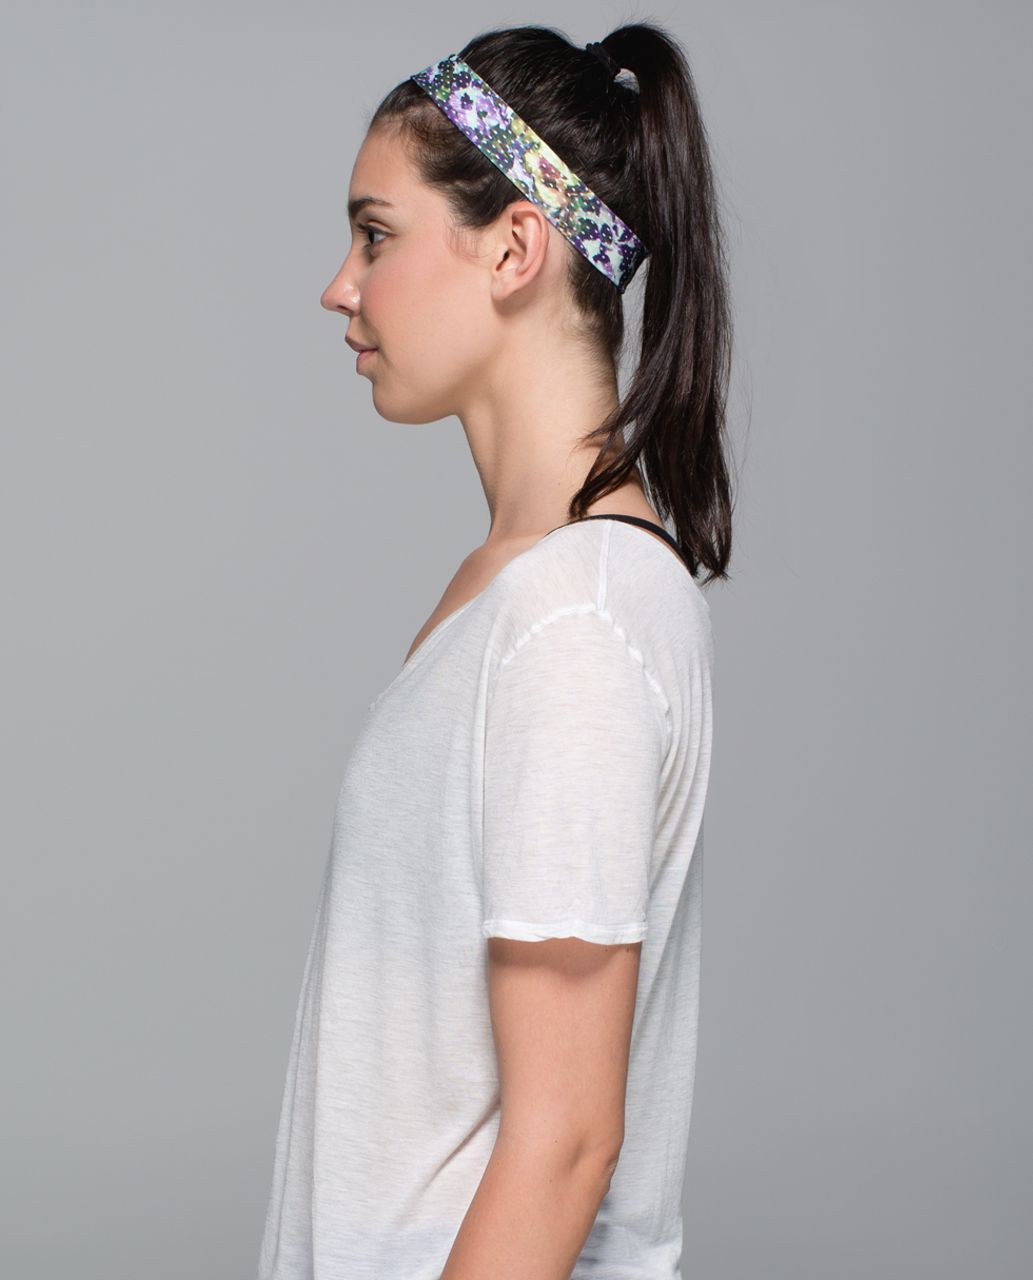 Lululemon Skinny Fly Away Tamer Headband - Floral Sport White Multi